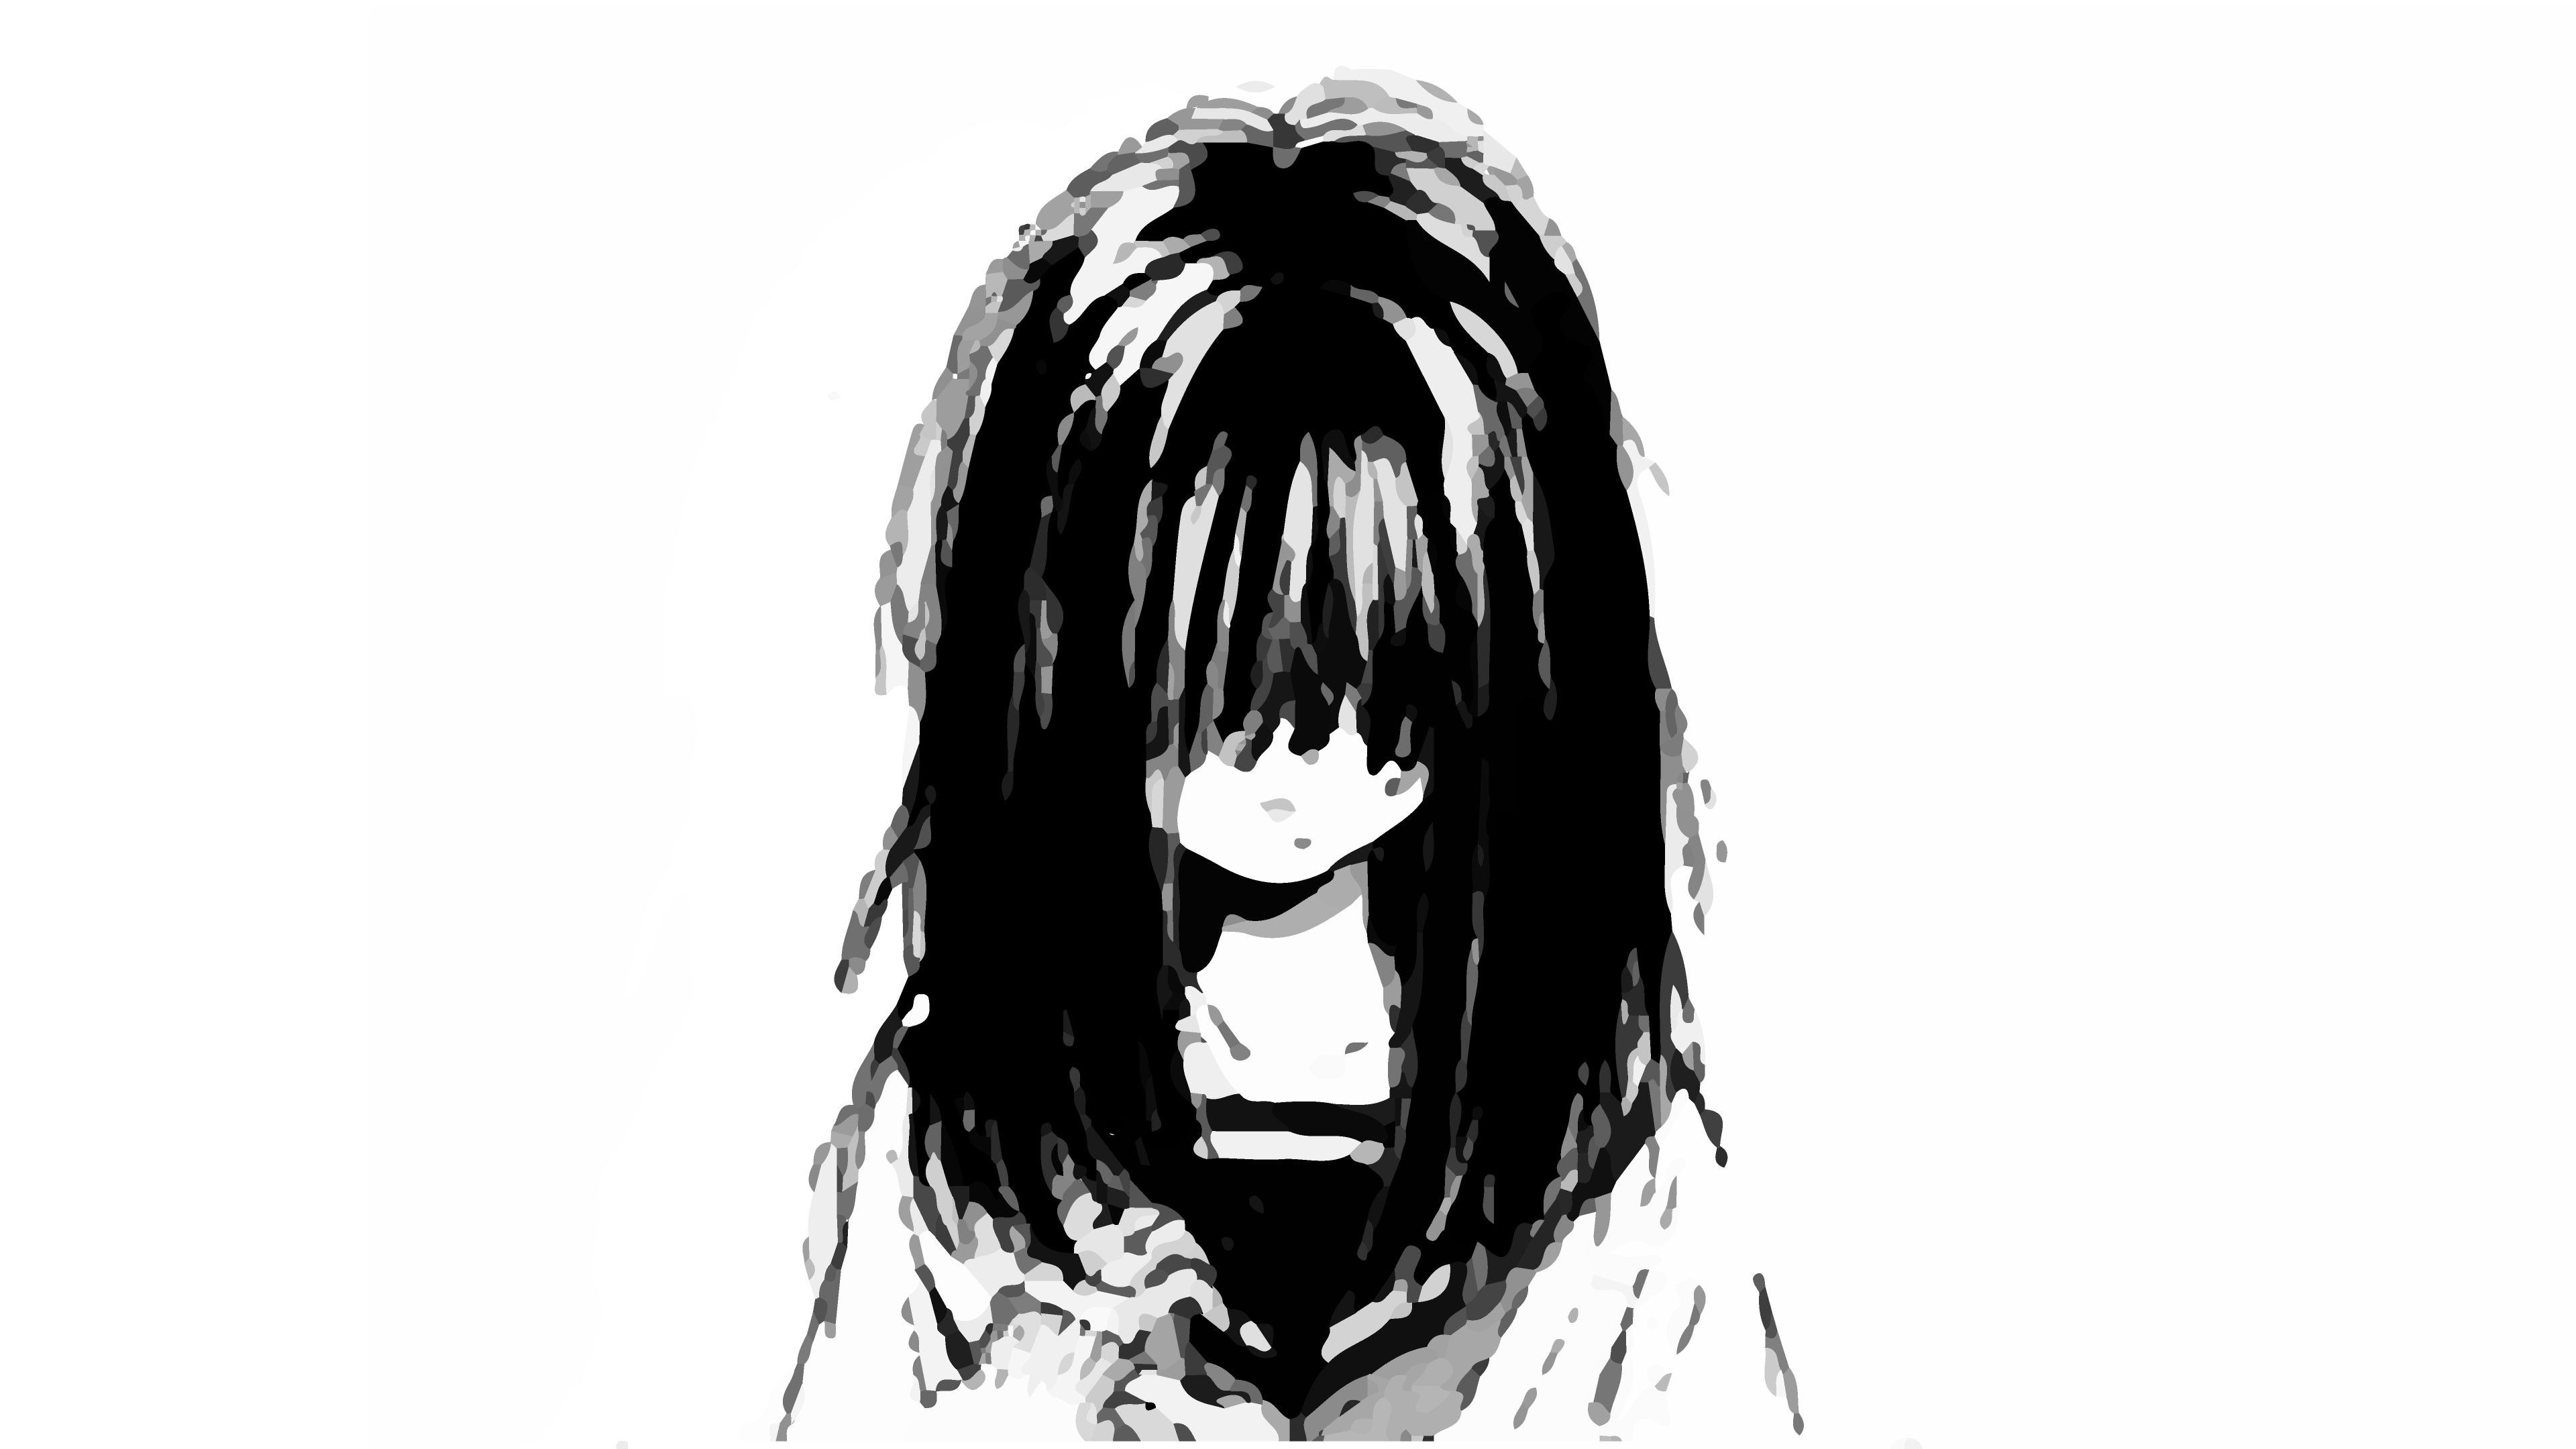 Sad Anime Girl Drawing. Explore collection